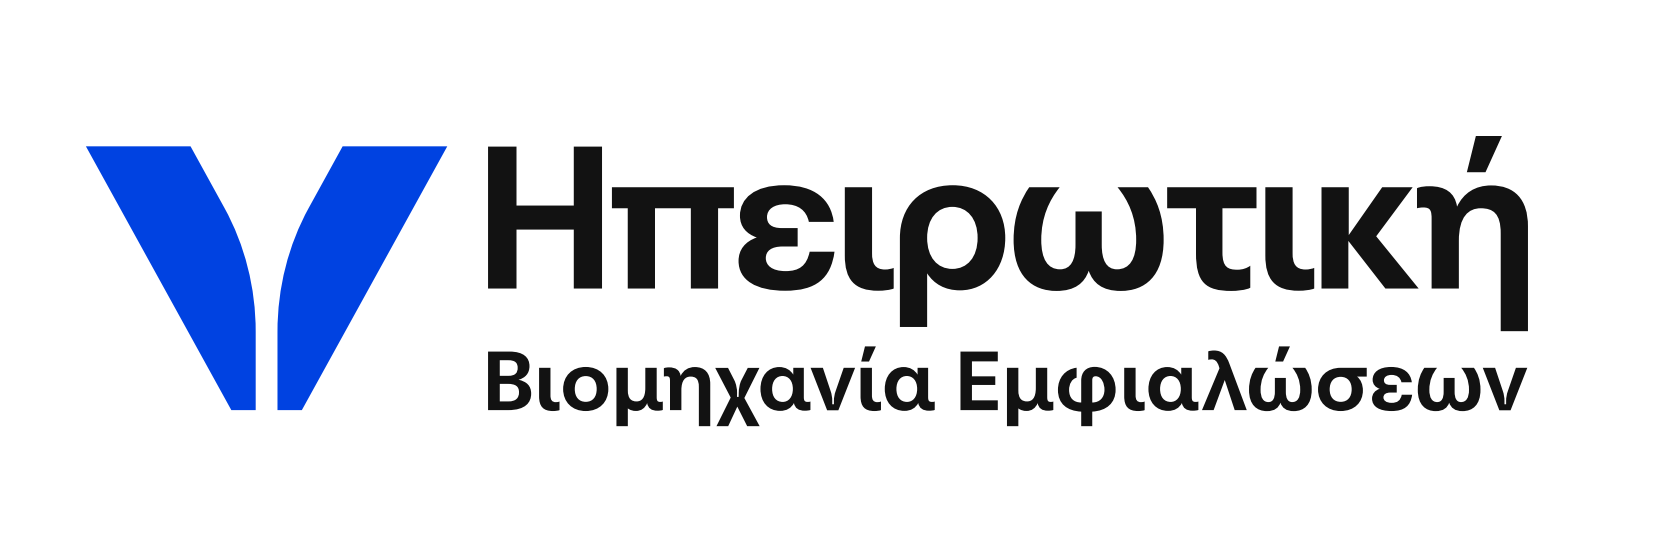 Ηπειρωτική Βιομηχανία Εμφιαλώσεων_logo